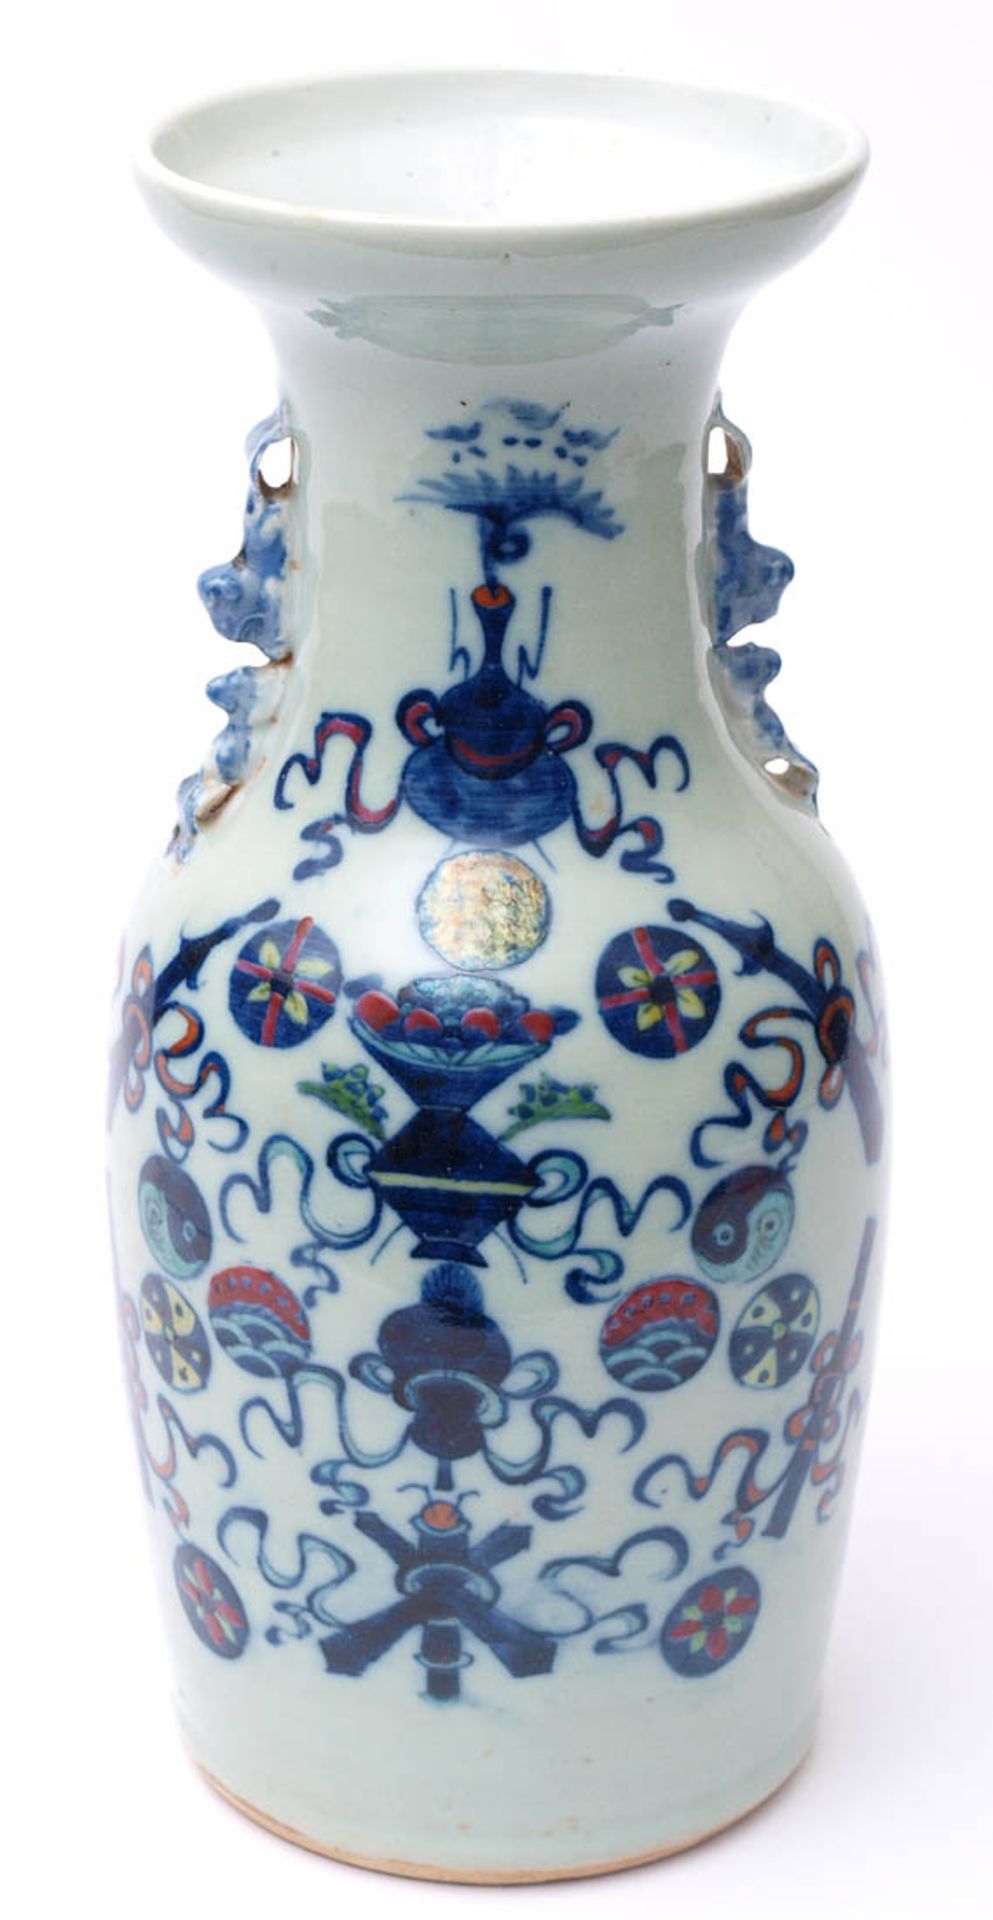 Famille-Rose-Vase, China, 2. Hälfte 19.Jhdt. Balusterförmiger Korpus, auf der Schulter Fo-Hunde